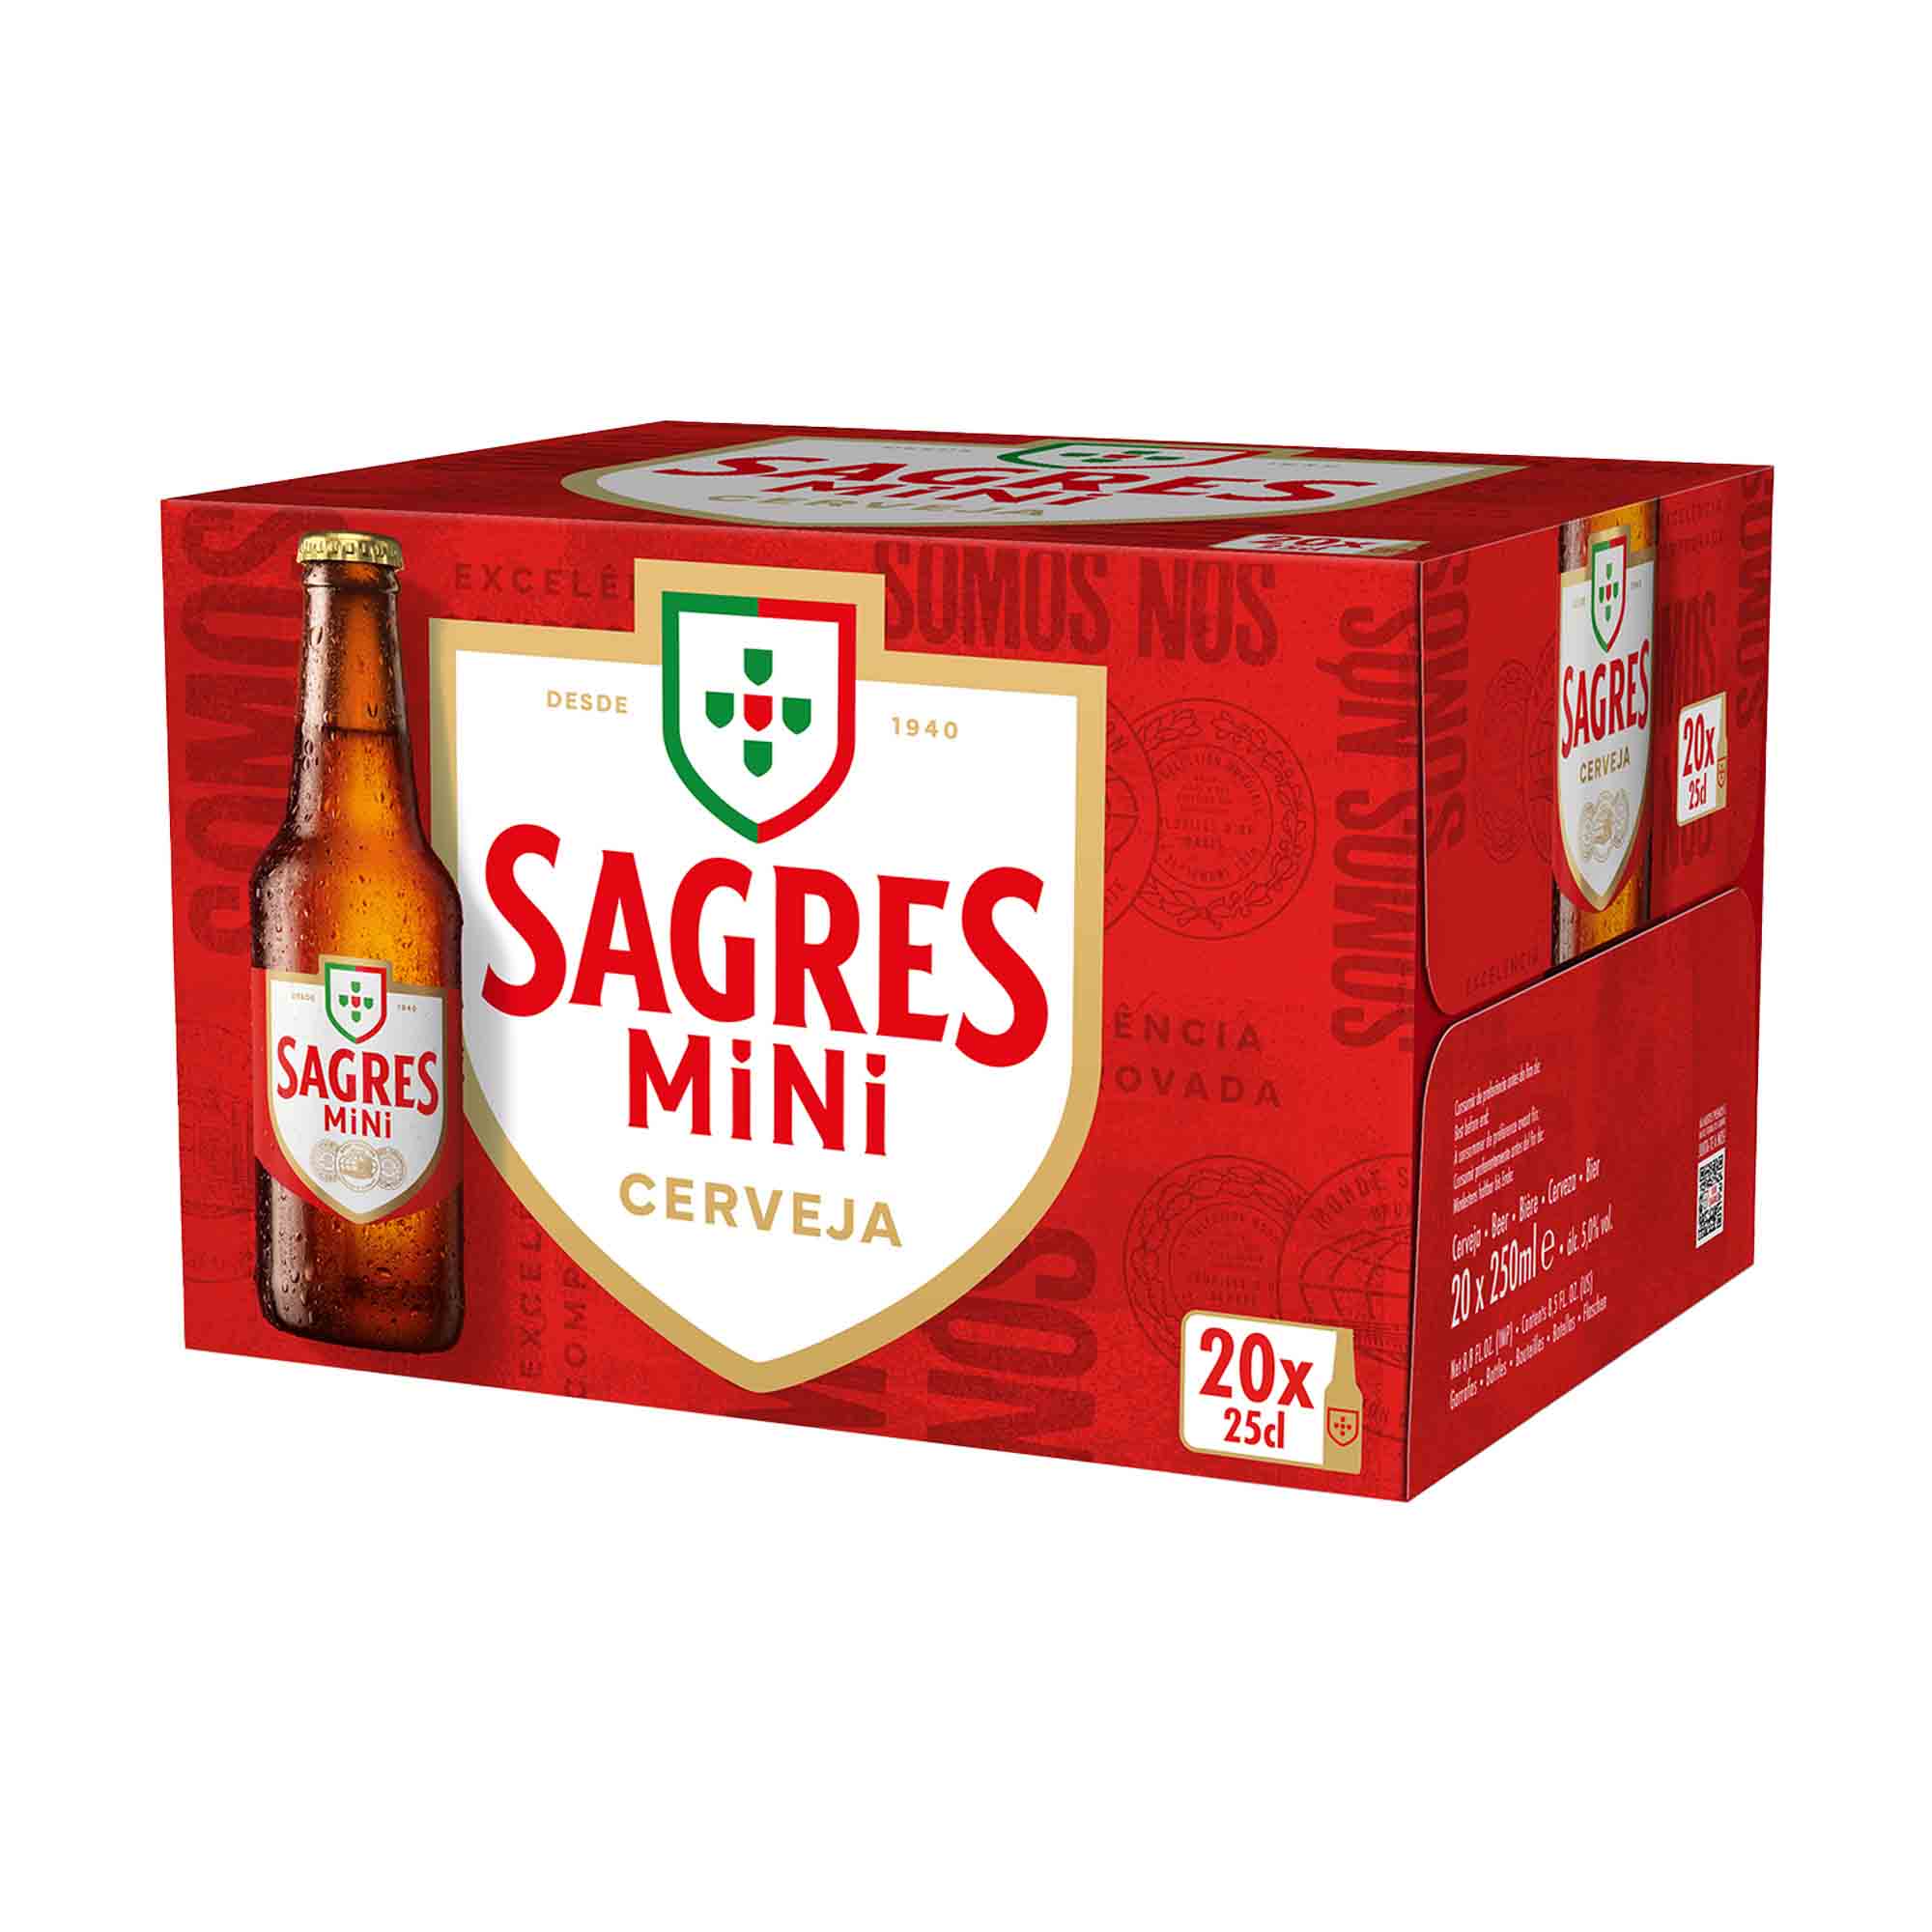 Mercadão - Pingo Doce: Cerveja com Álcool Bohemia Original Sagres- Pack 6